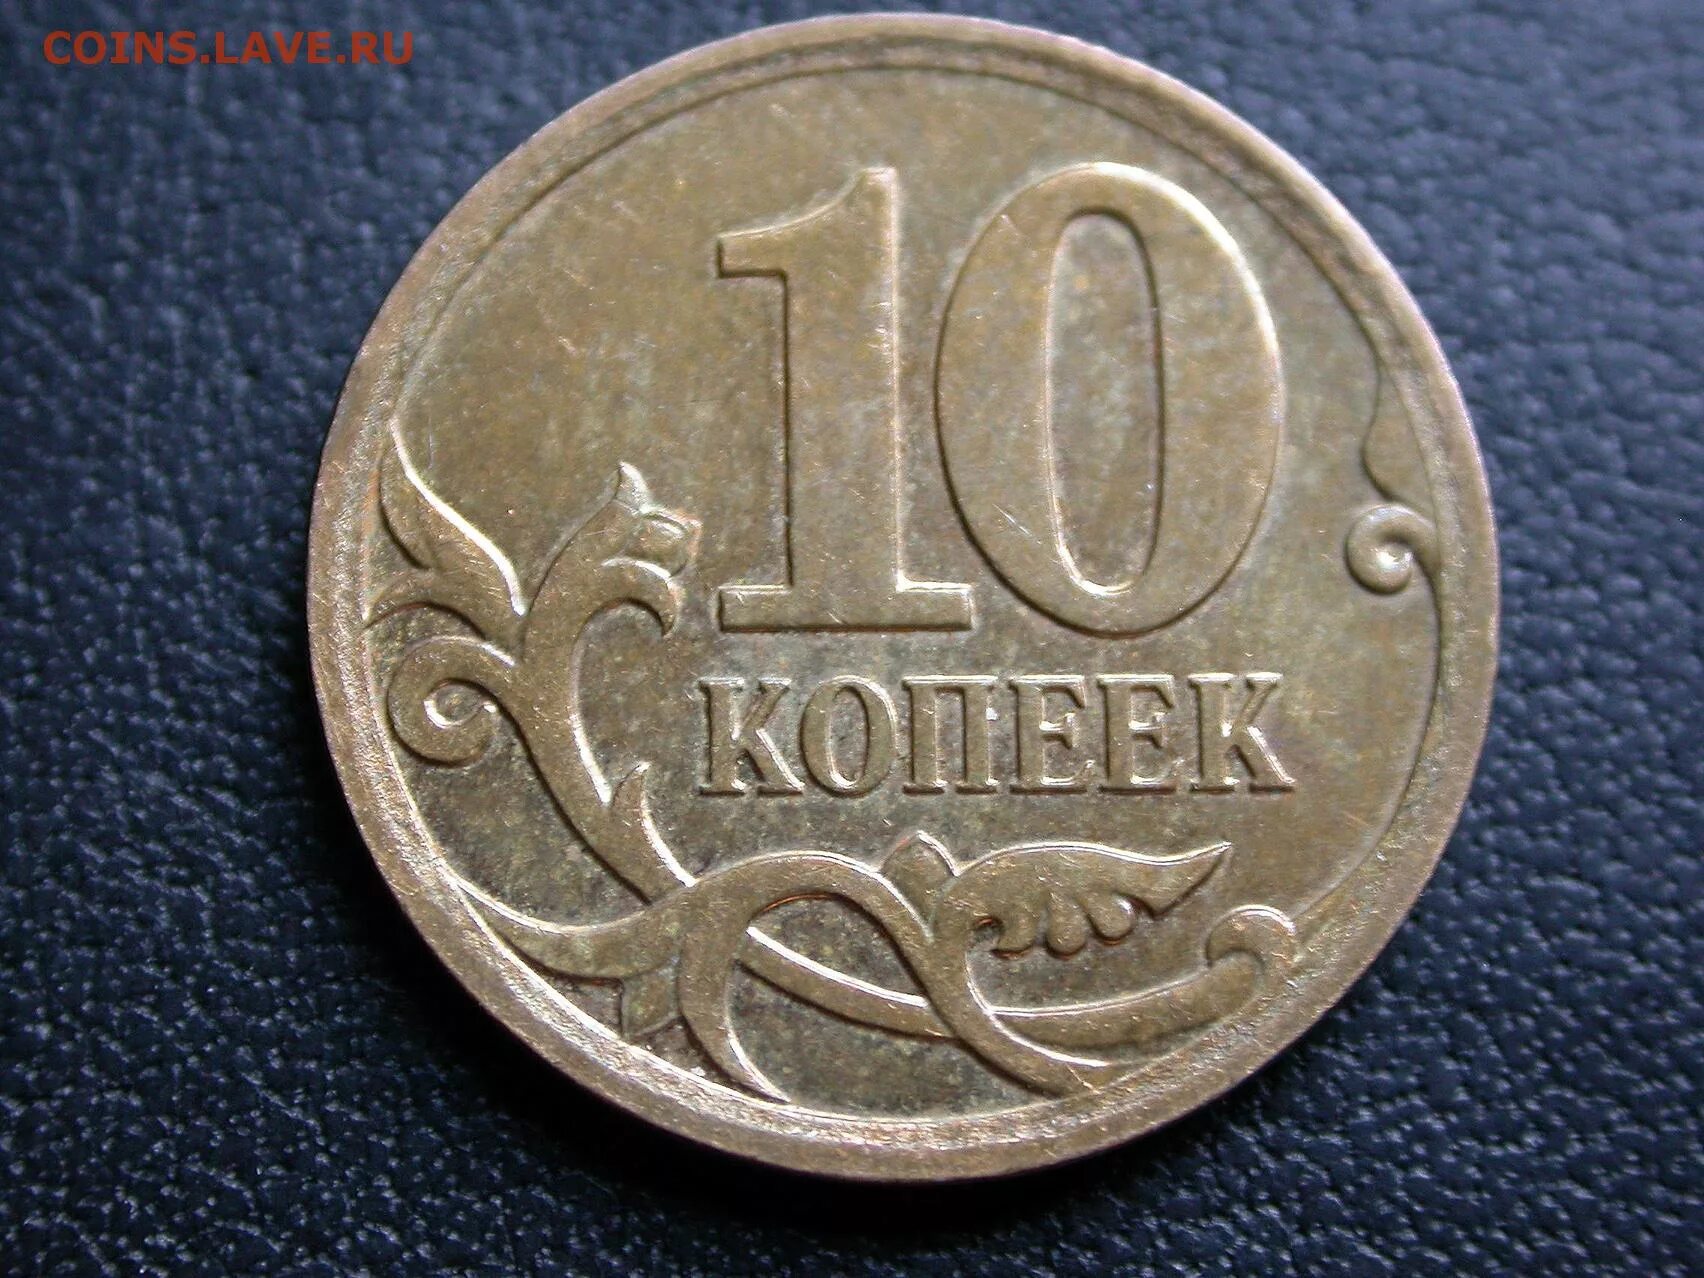 Перепутка 1 рубль 2014 реверс 10 копеек. 11а-004. Монета перепутка реверс-реверс. 10 Коп 2013г полный раскол. Гб 11 11 б